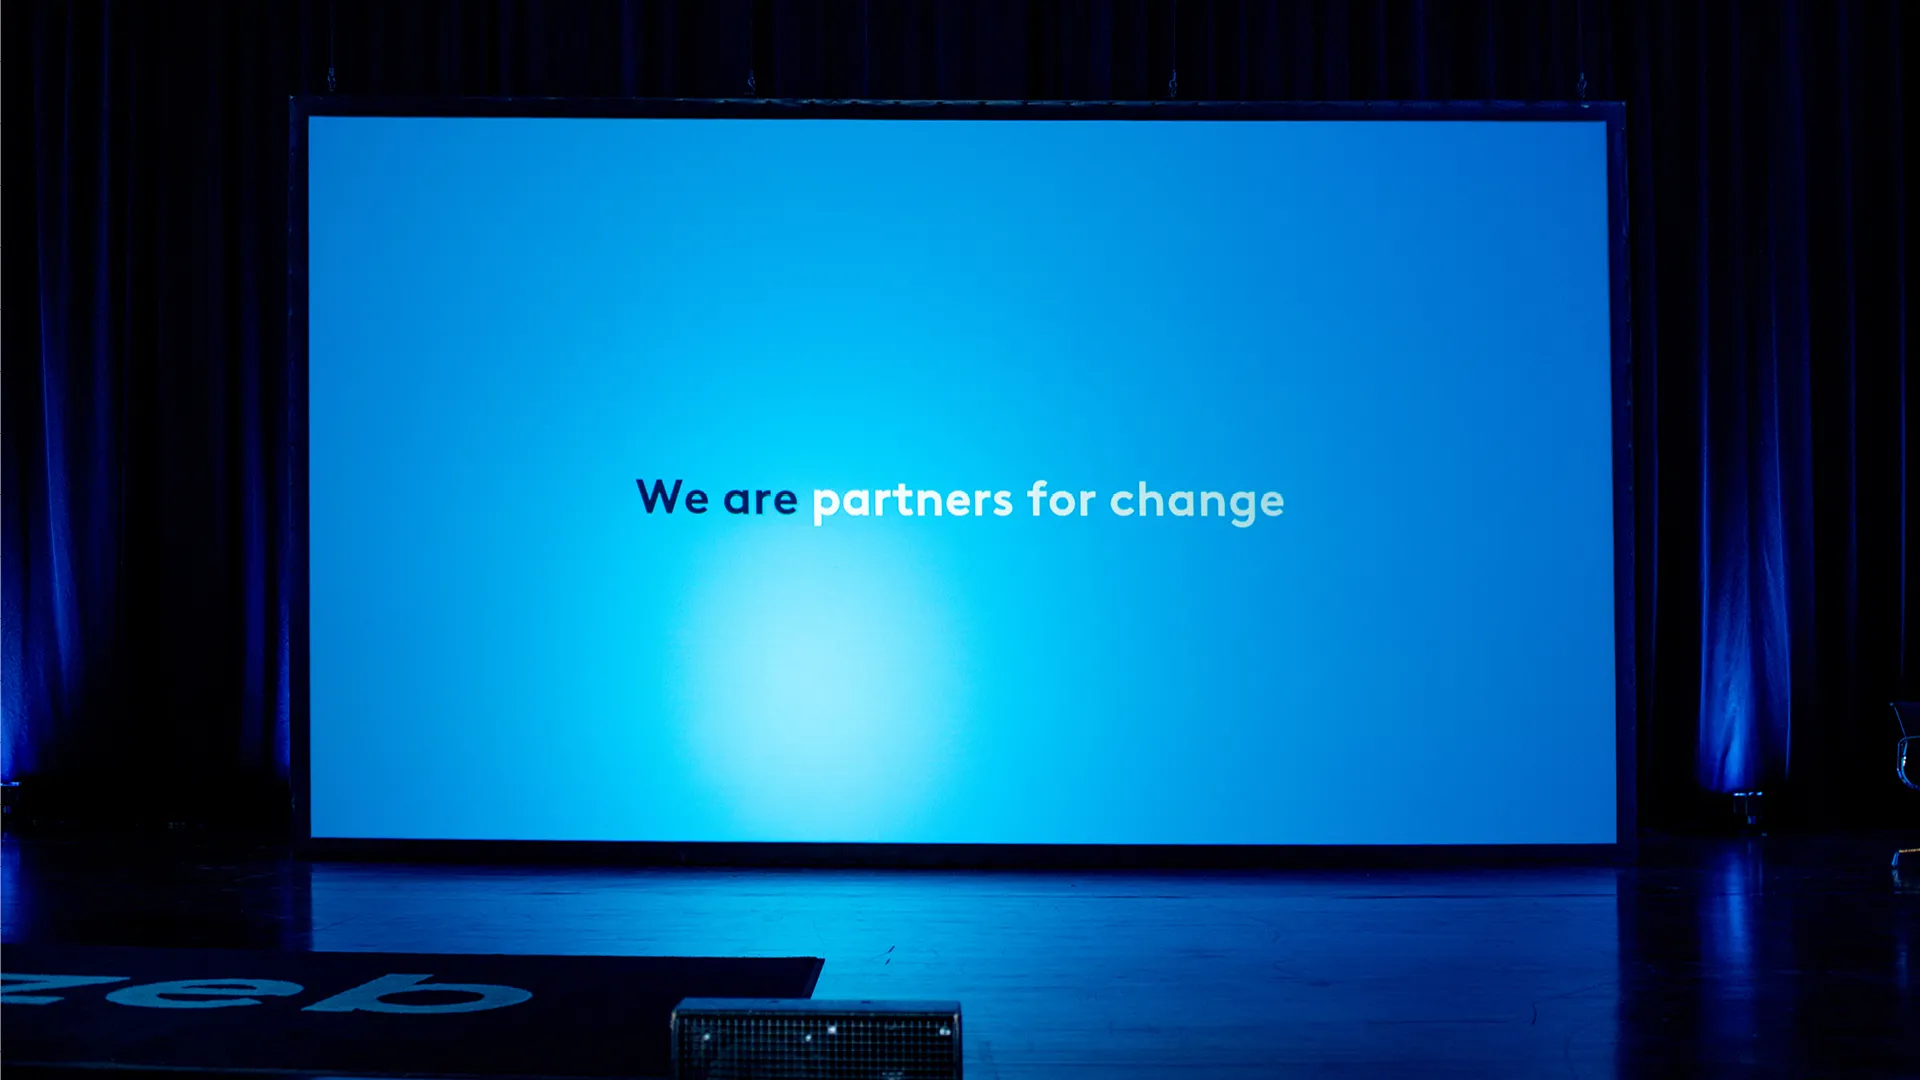 Auf einer Leinwand ist der zeb-Slogan "Partners for change" zu sehen.